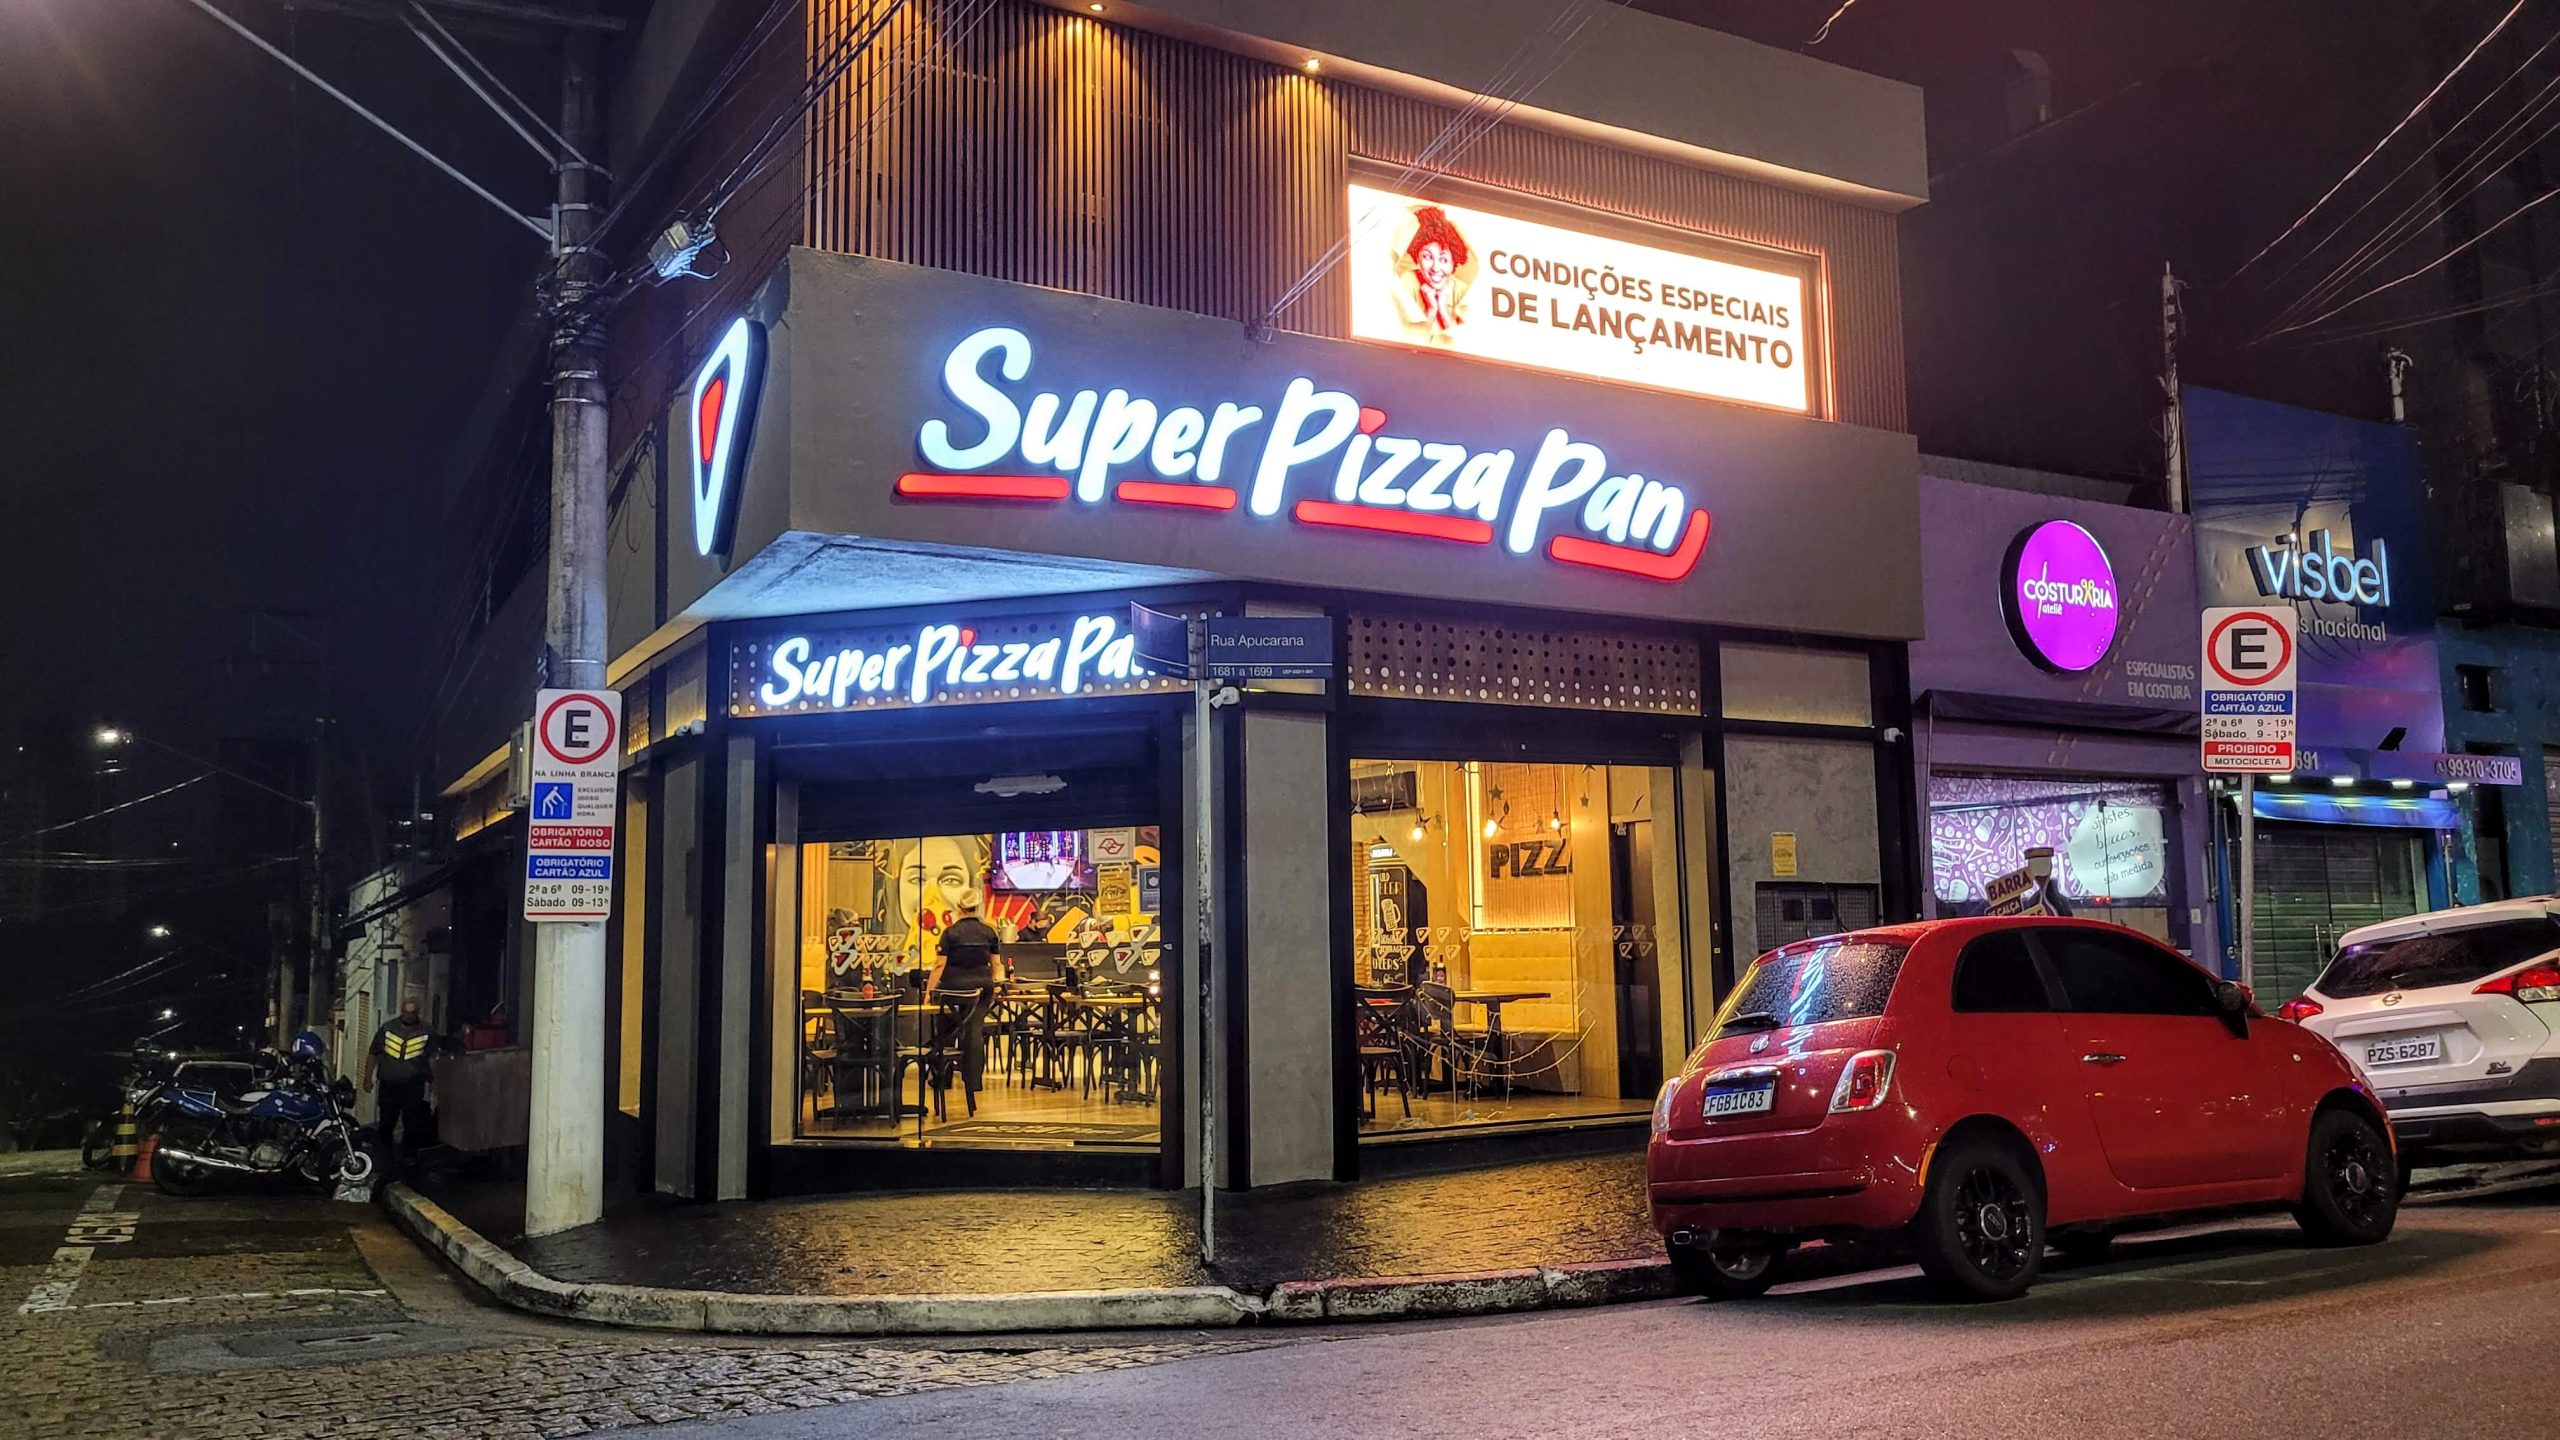 Fotos em Super Pizza Pan - Pizzaria em São Paulo